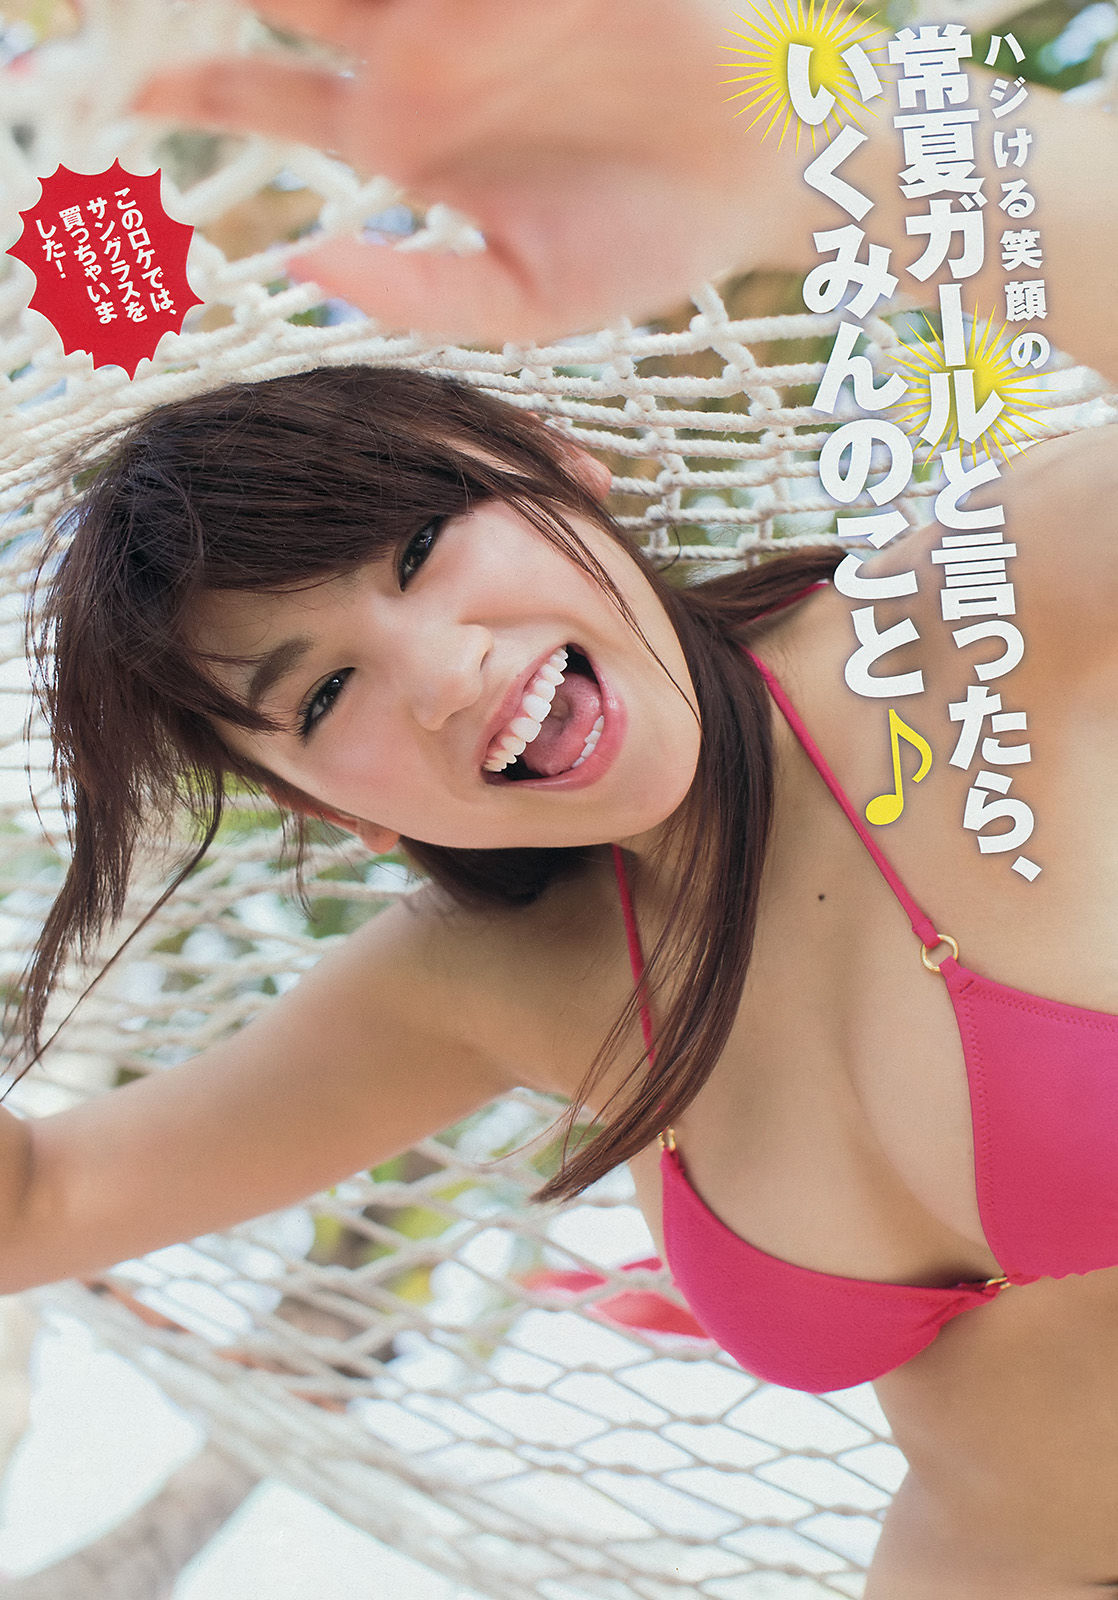 [Young Magazine] Ikumi Hisamatsu Haruna Kawaguchi 2014 No.32 Photograph Page 13 No.116976